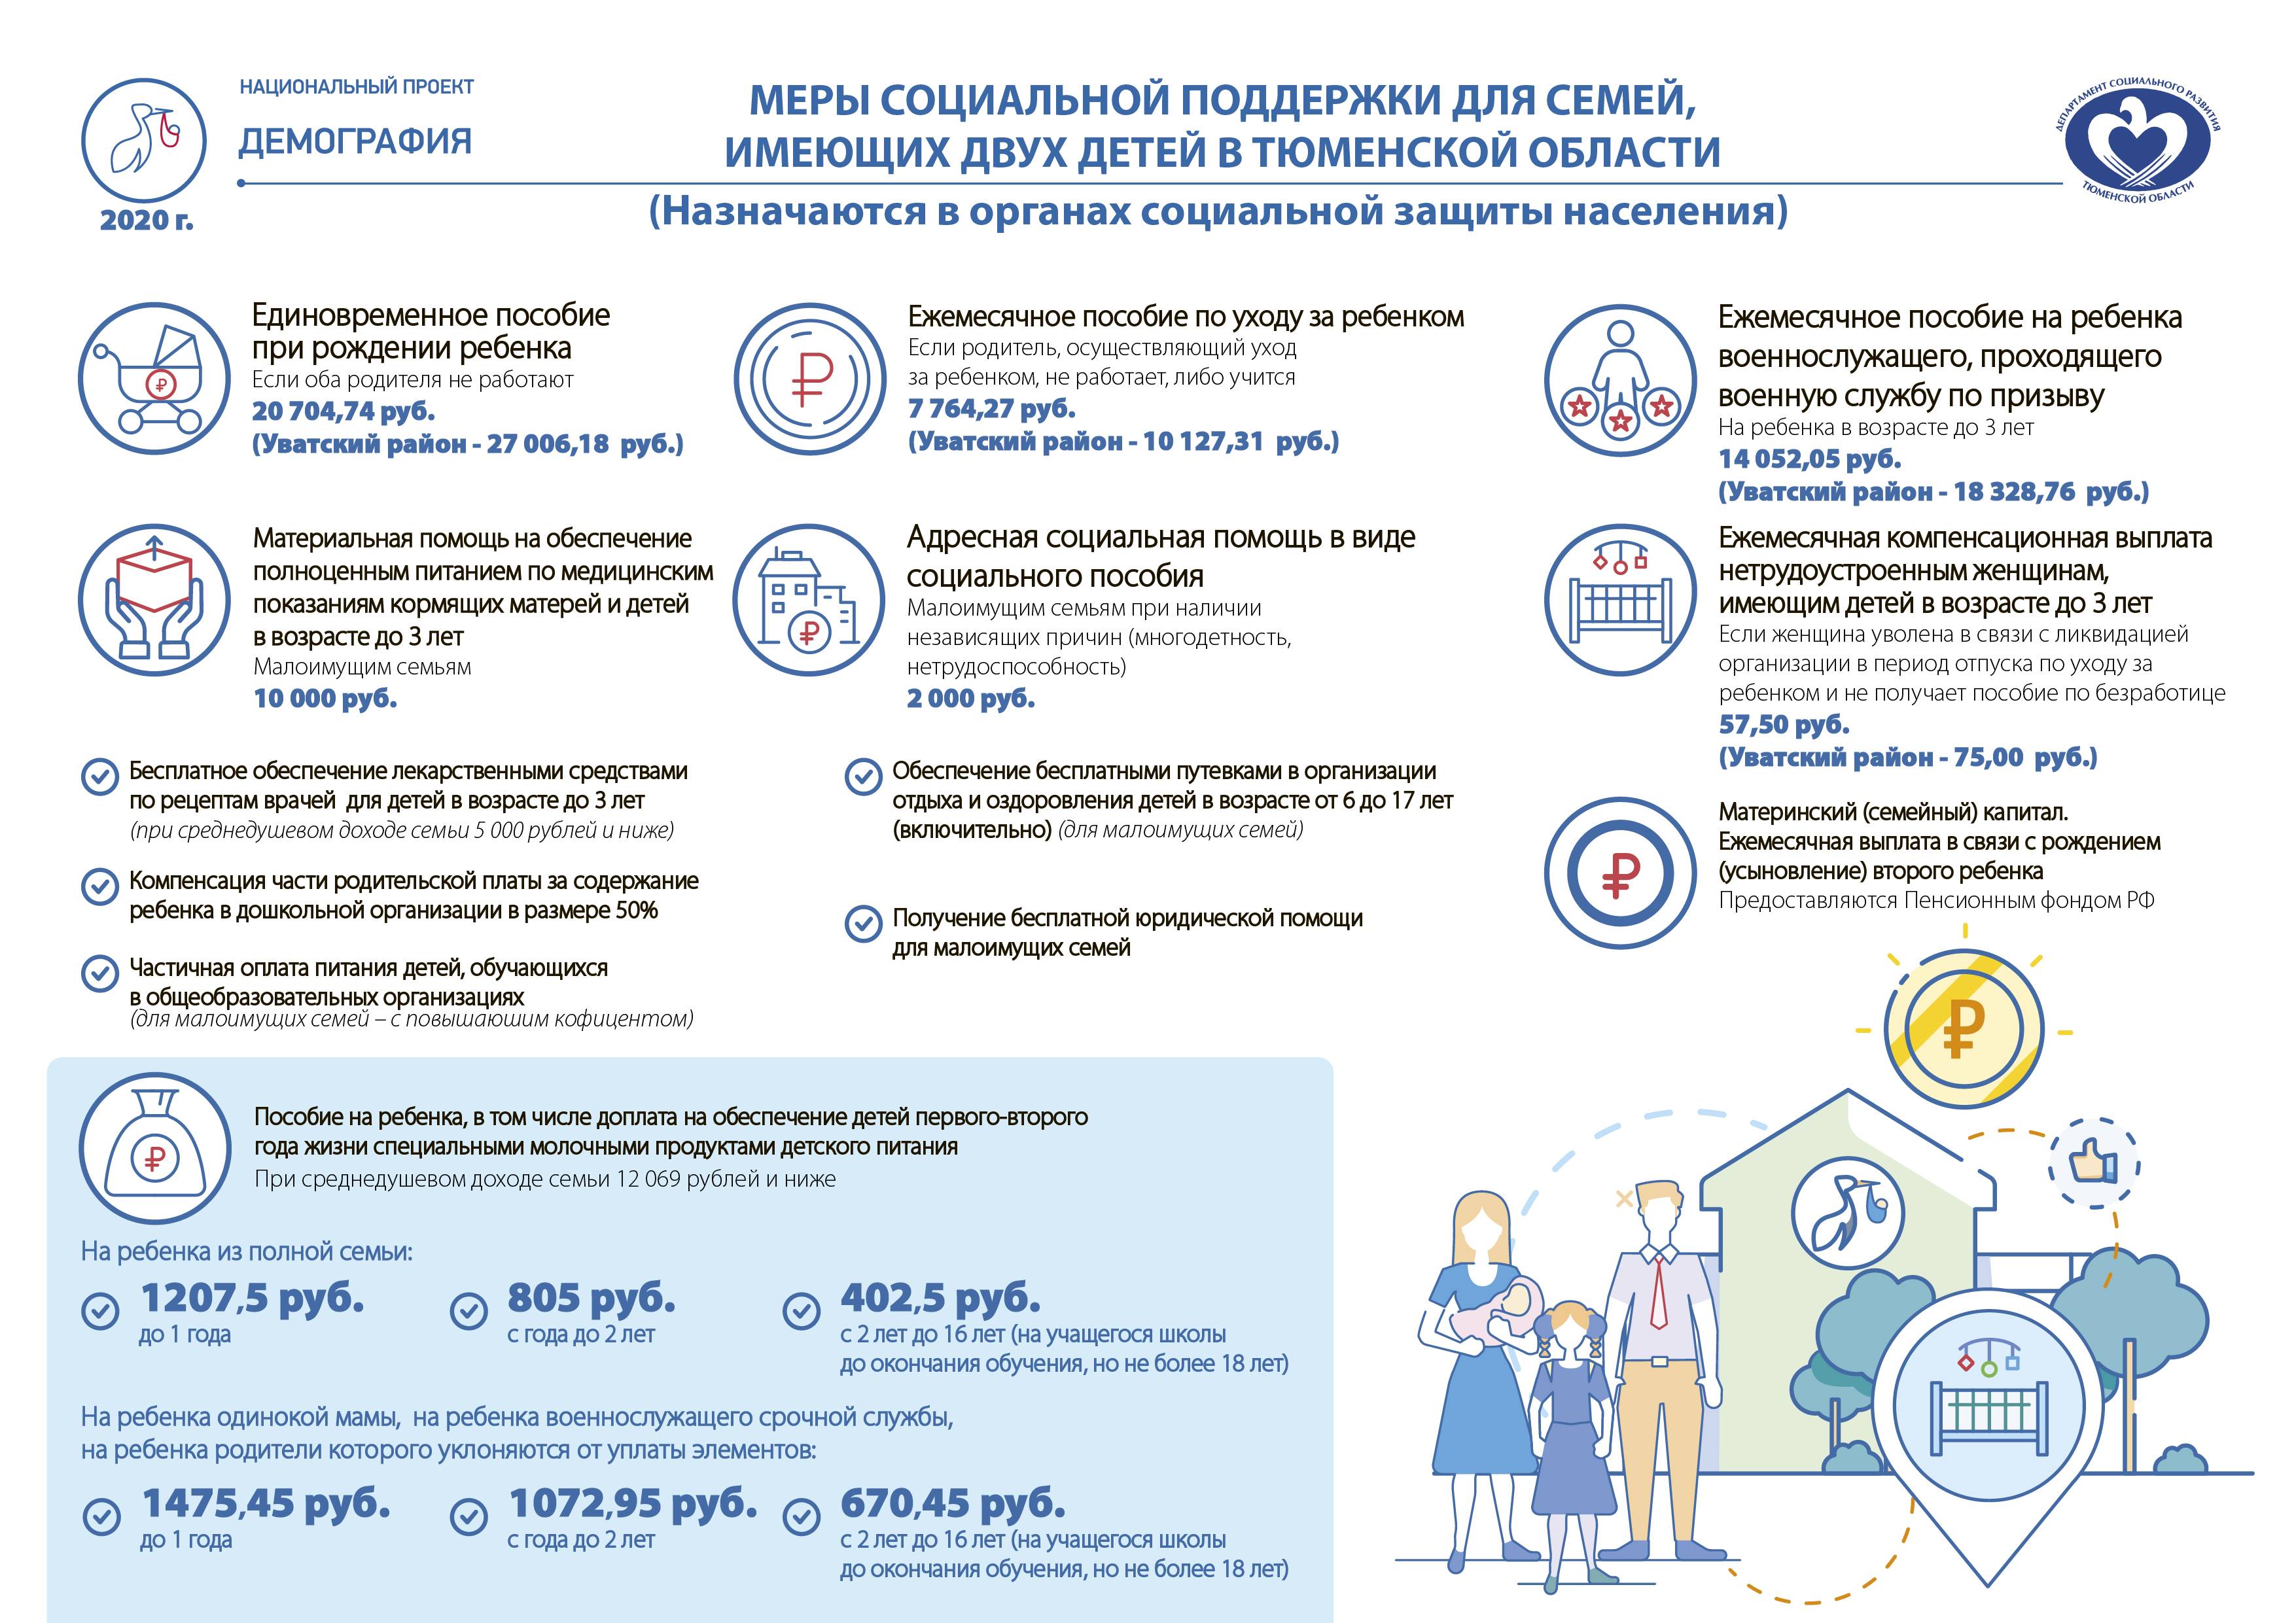 Объявлено о новом пособии на детей по 13 000 рублей, которое начнут зачислять на банковские карты с 14 ноября 2022 года малоимущим семьям